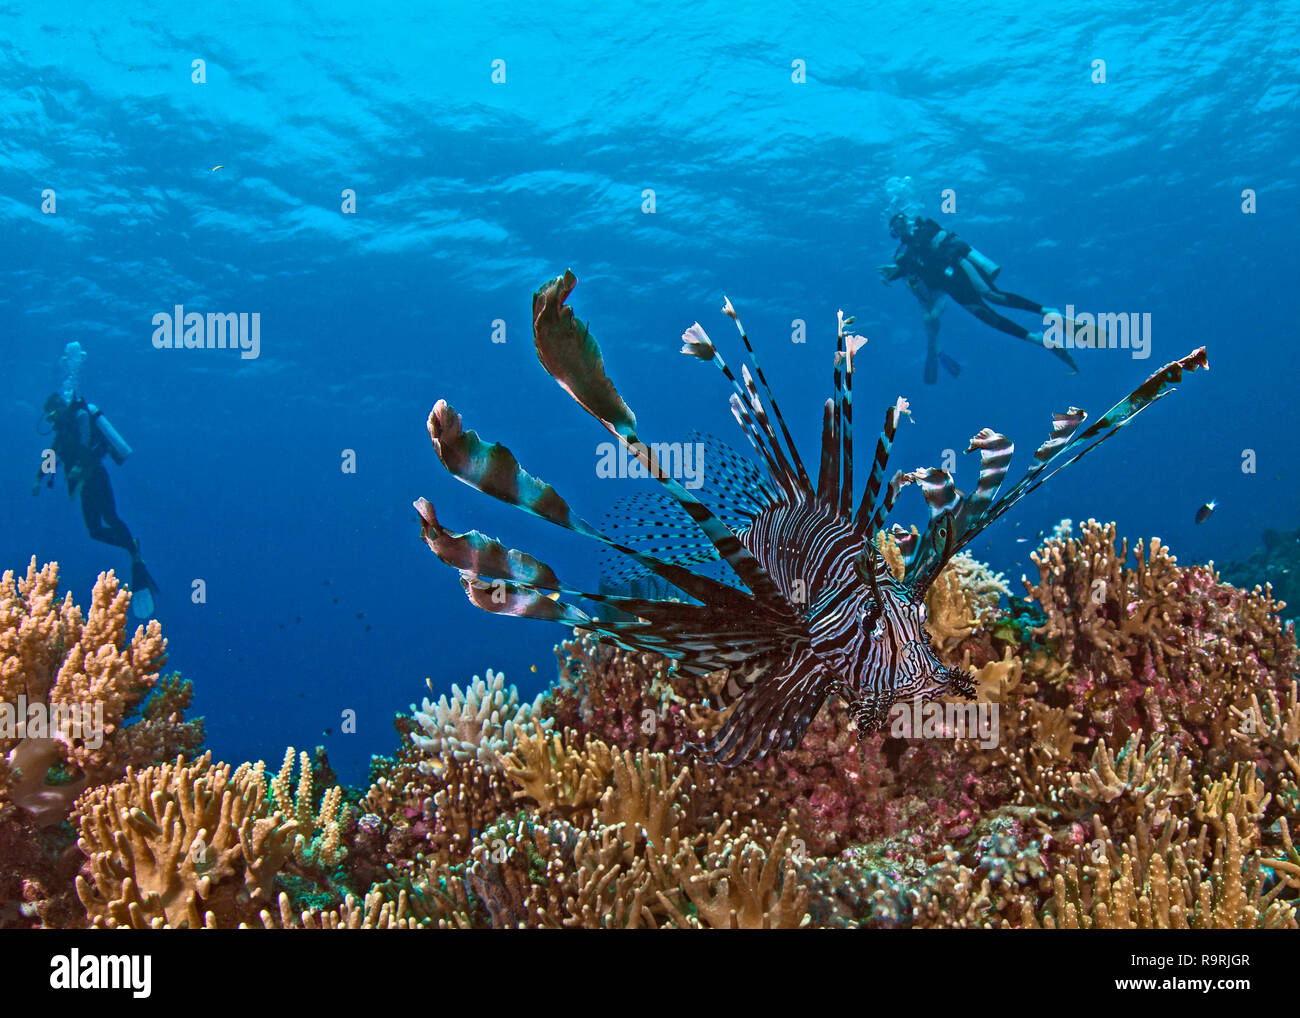 Grand angle de champ image de poisson-papillon sur les récifs coralliens de nombreux plongeurs dans l'eau bleu arrière-plan. Spratley, Mer de Chine du Sud. Banque D'Images